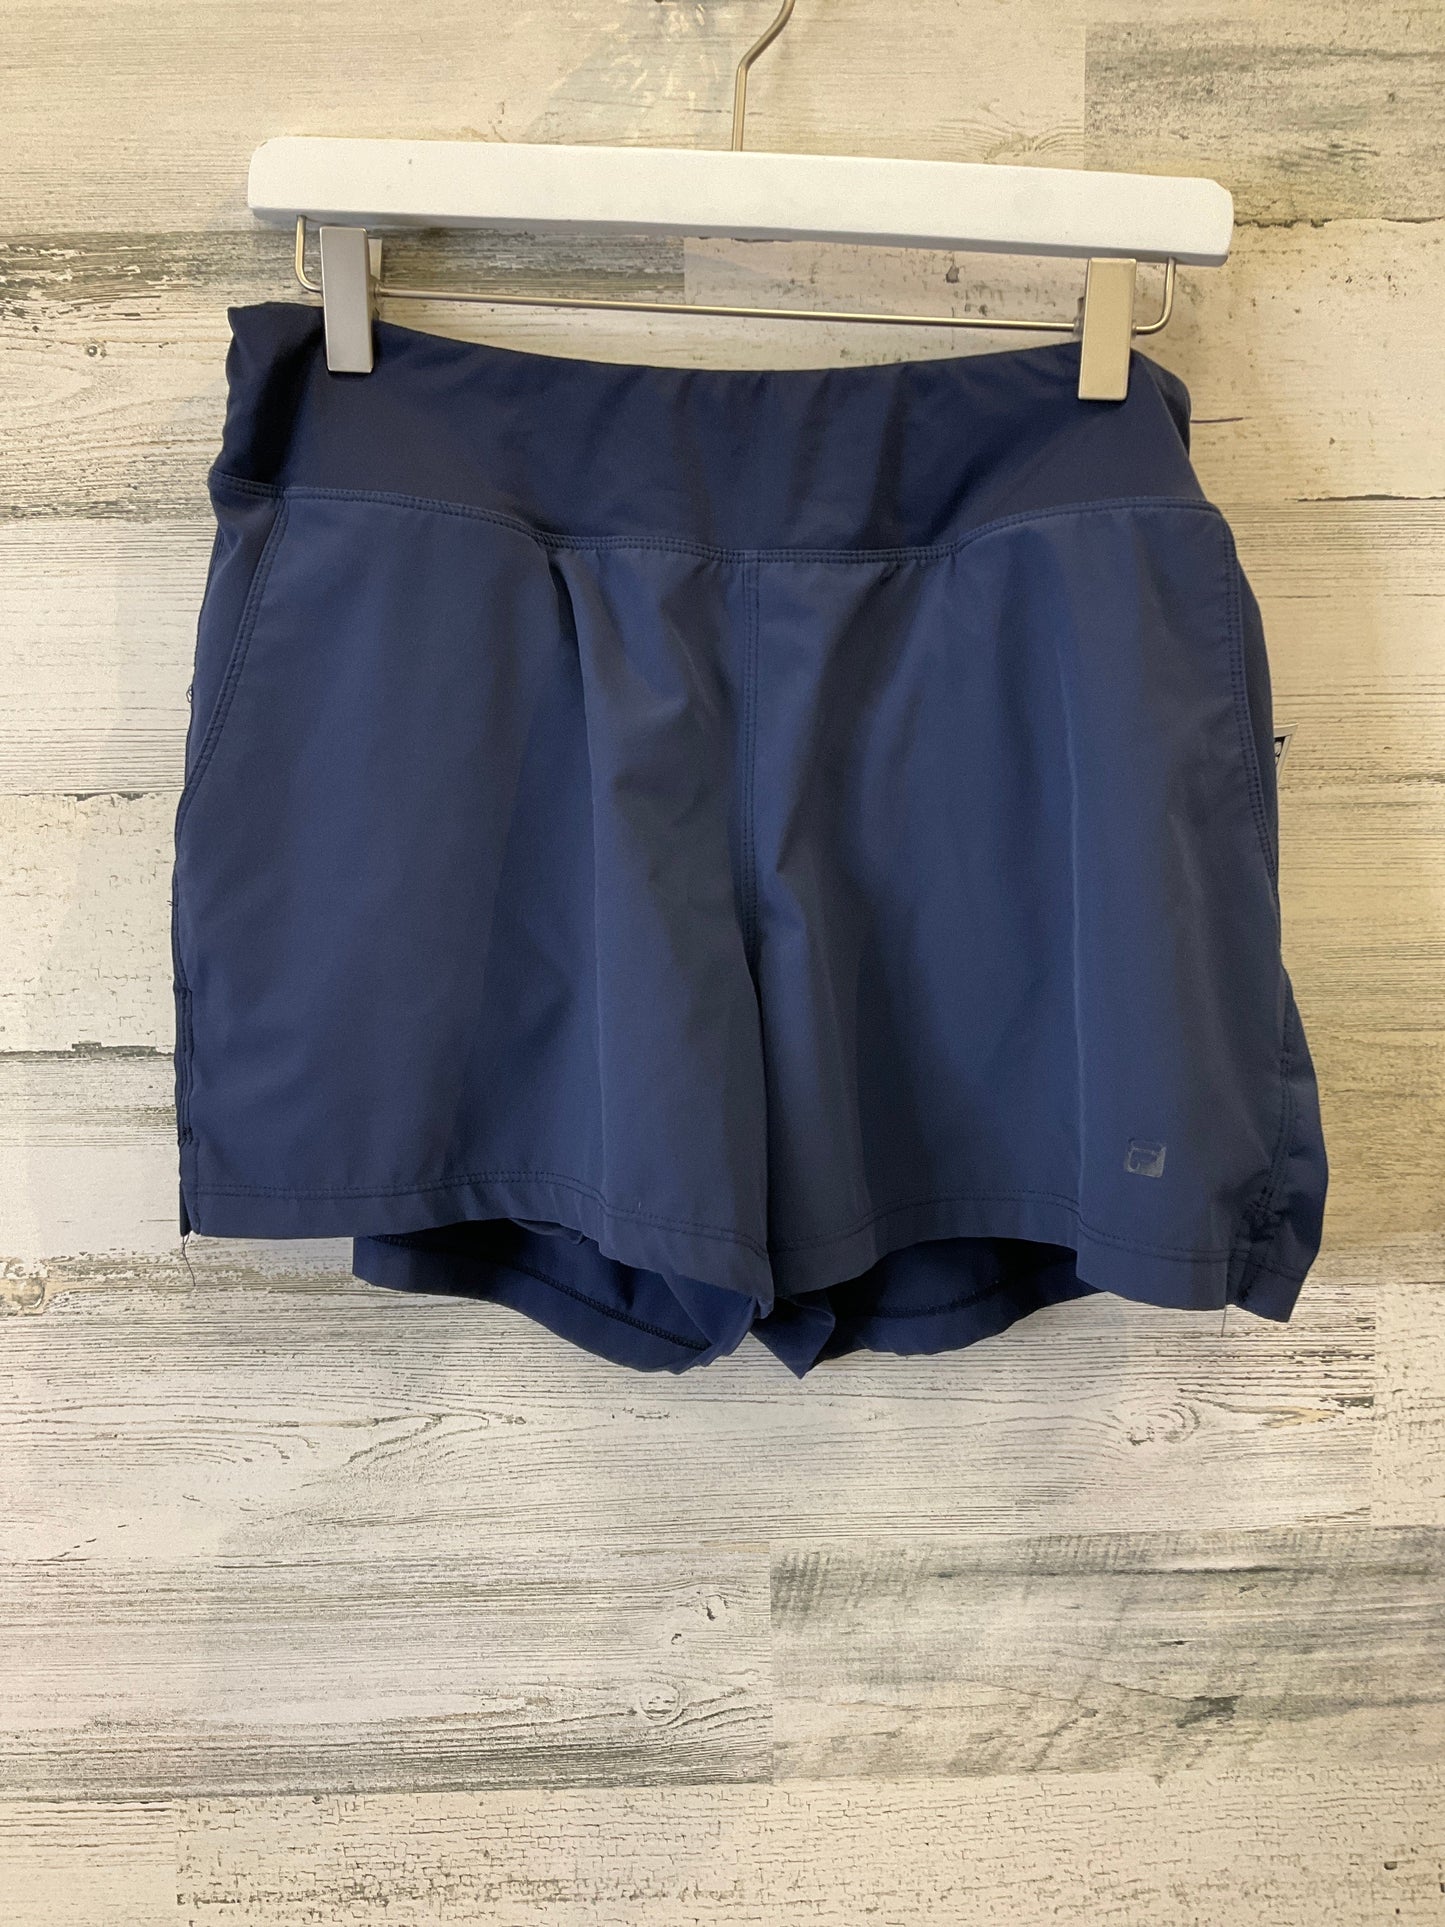 Blue Athletic Shorts Fila, Size M